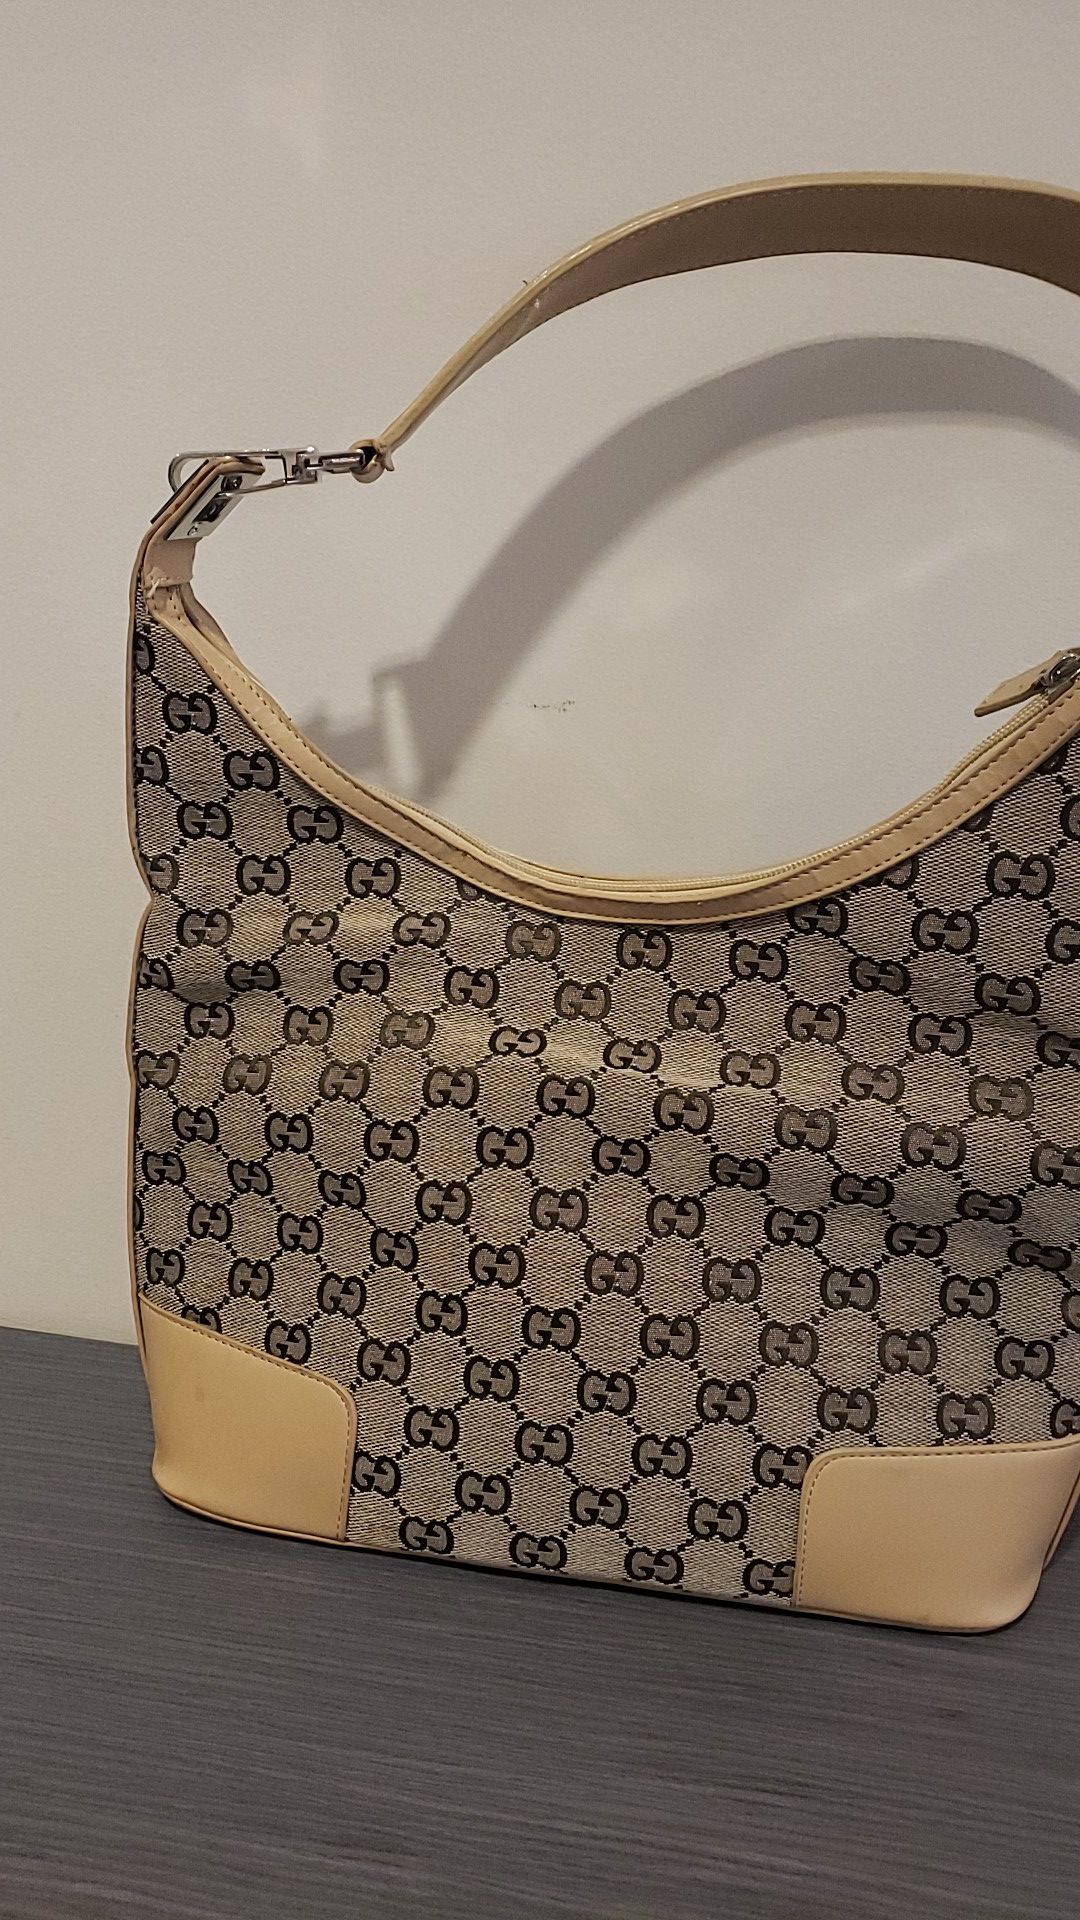 Gucci Handbag Authentic New